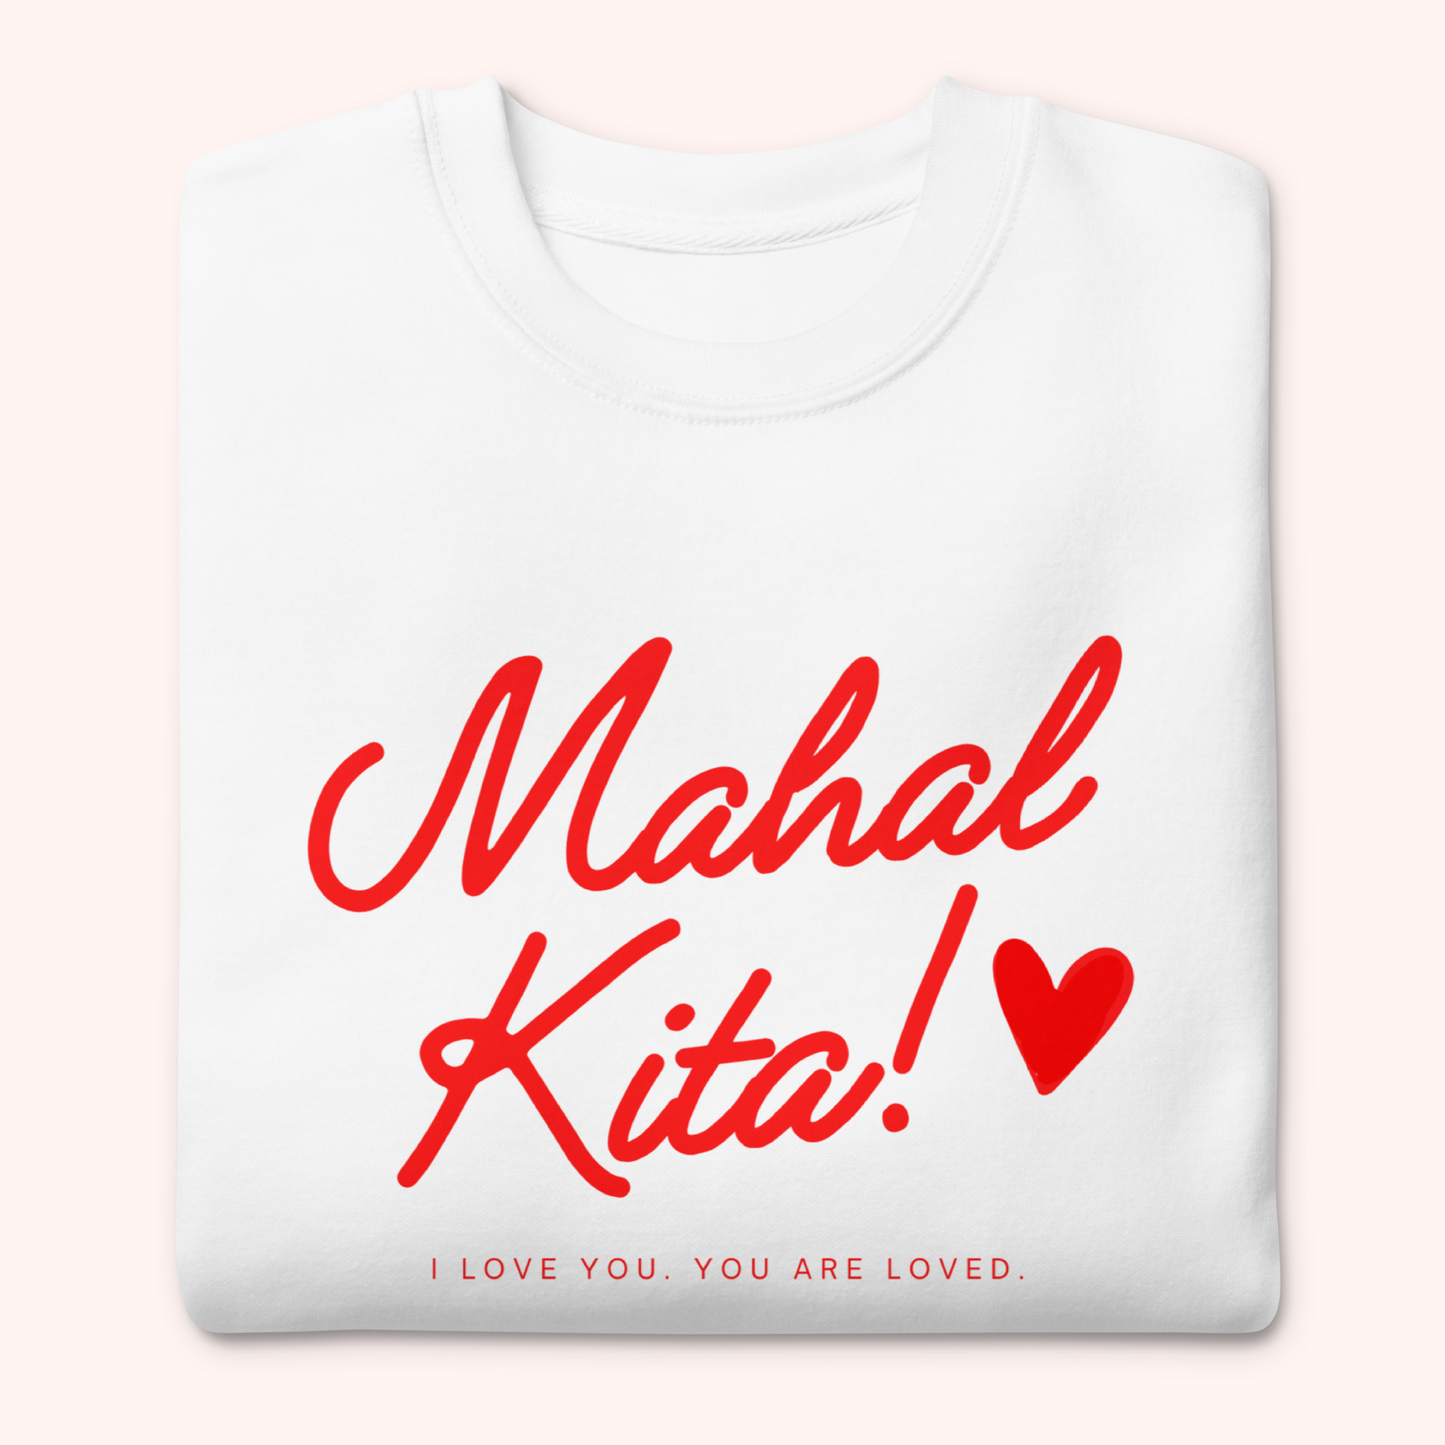 Filipino Sweatshirt Mahal Kita Statement Pinoy Crewneck in variant White Image 3